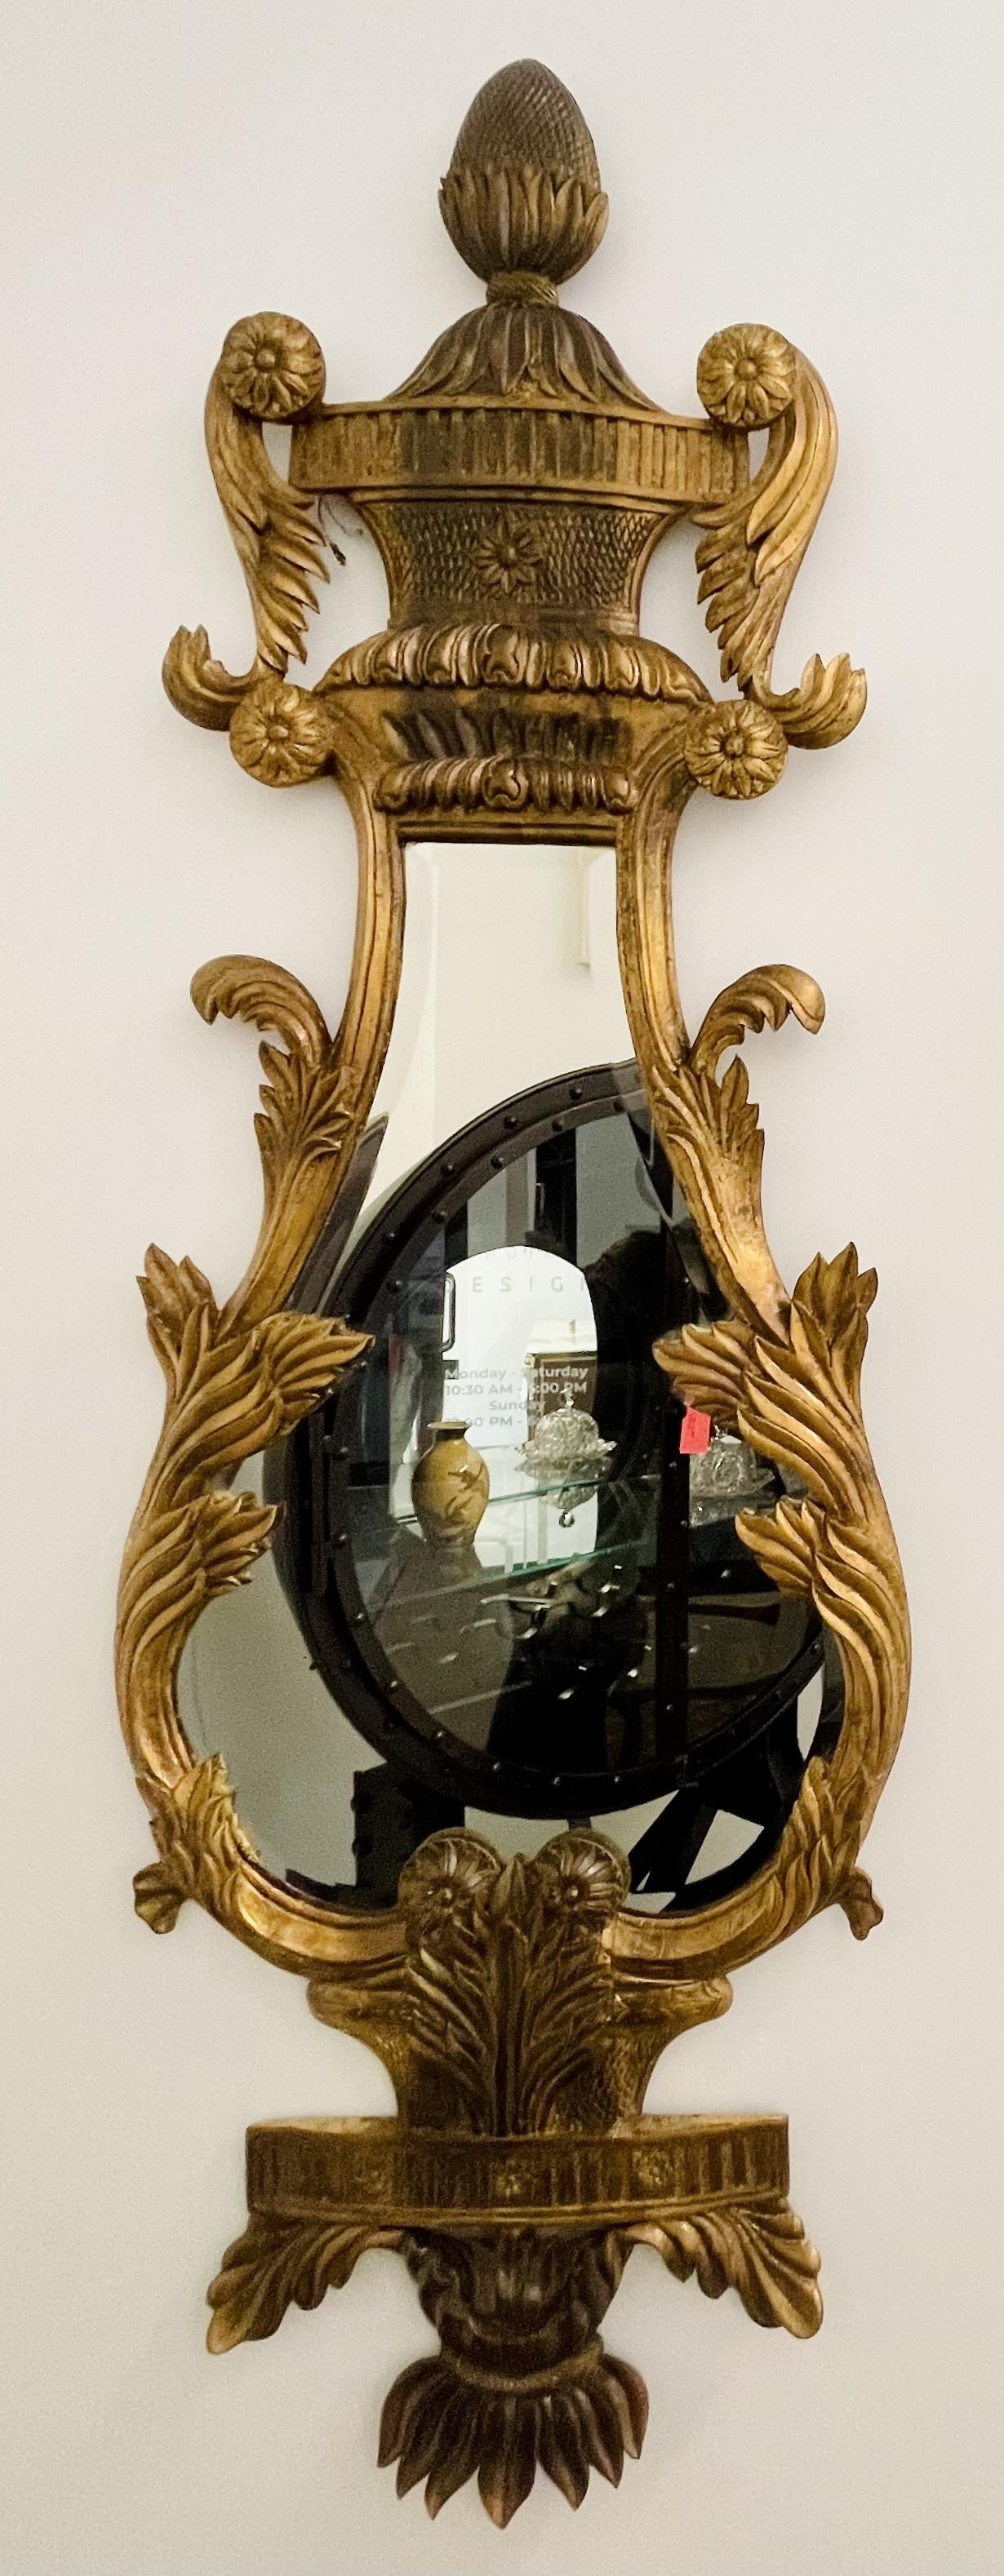 Une belle paire de miroirs muraux ou de console en bois doré italien.
 
La paire a une forme de harpe avec un pédimont sculpté en ananas et des sculptures en bois doré tout autour, avec un centre en miroir biseauté. 
 
IXgZ.